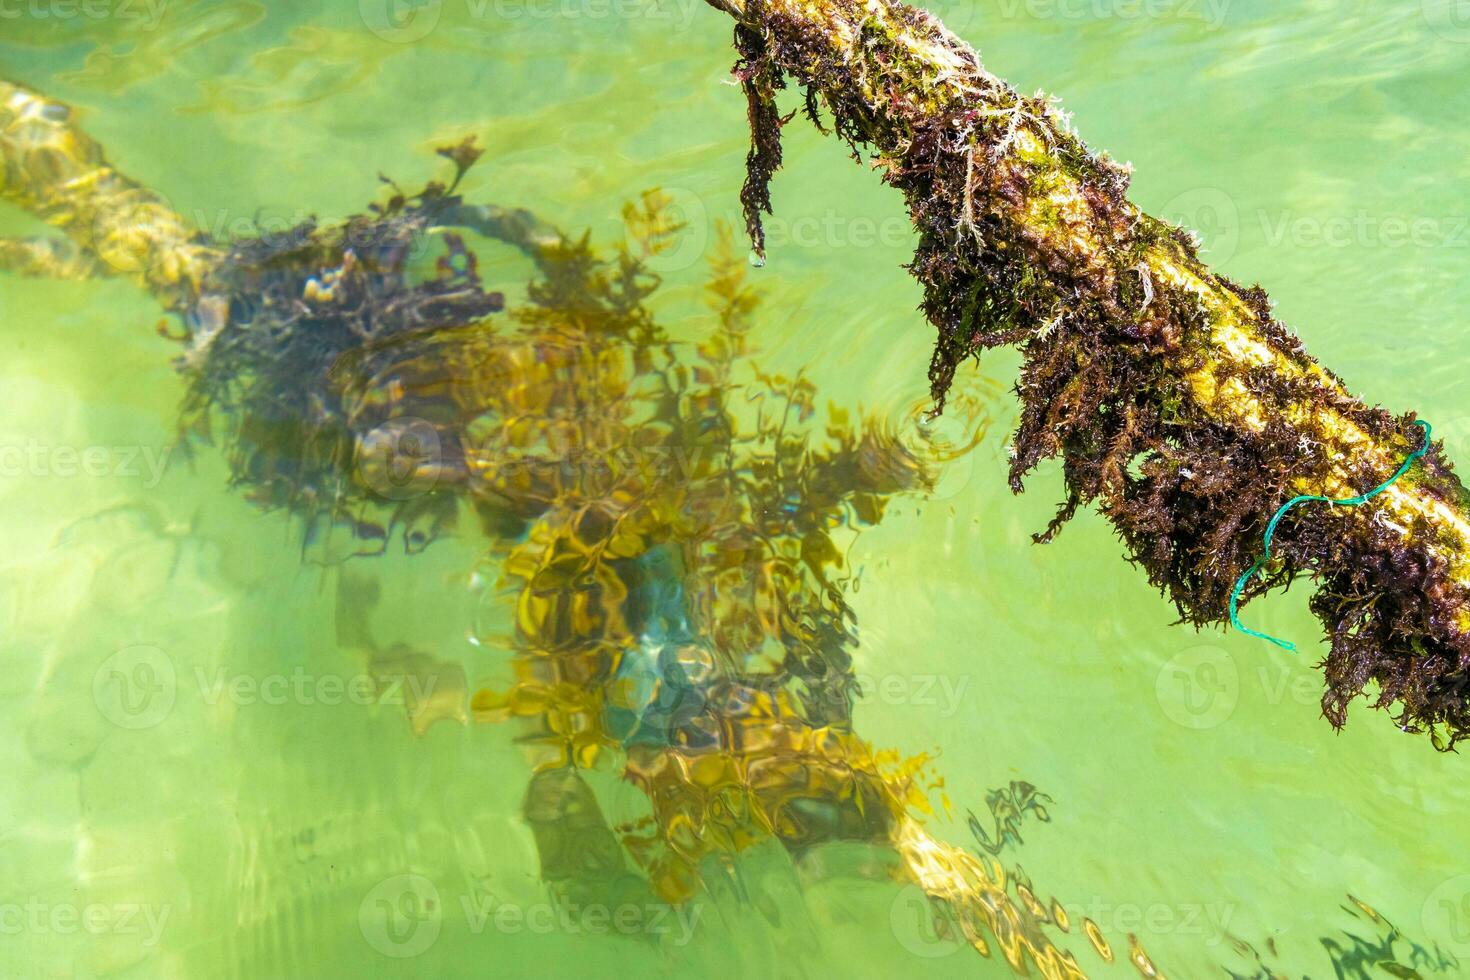 tågvirke i de vatten med mossa och hav ogräs Mexiko. foto